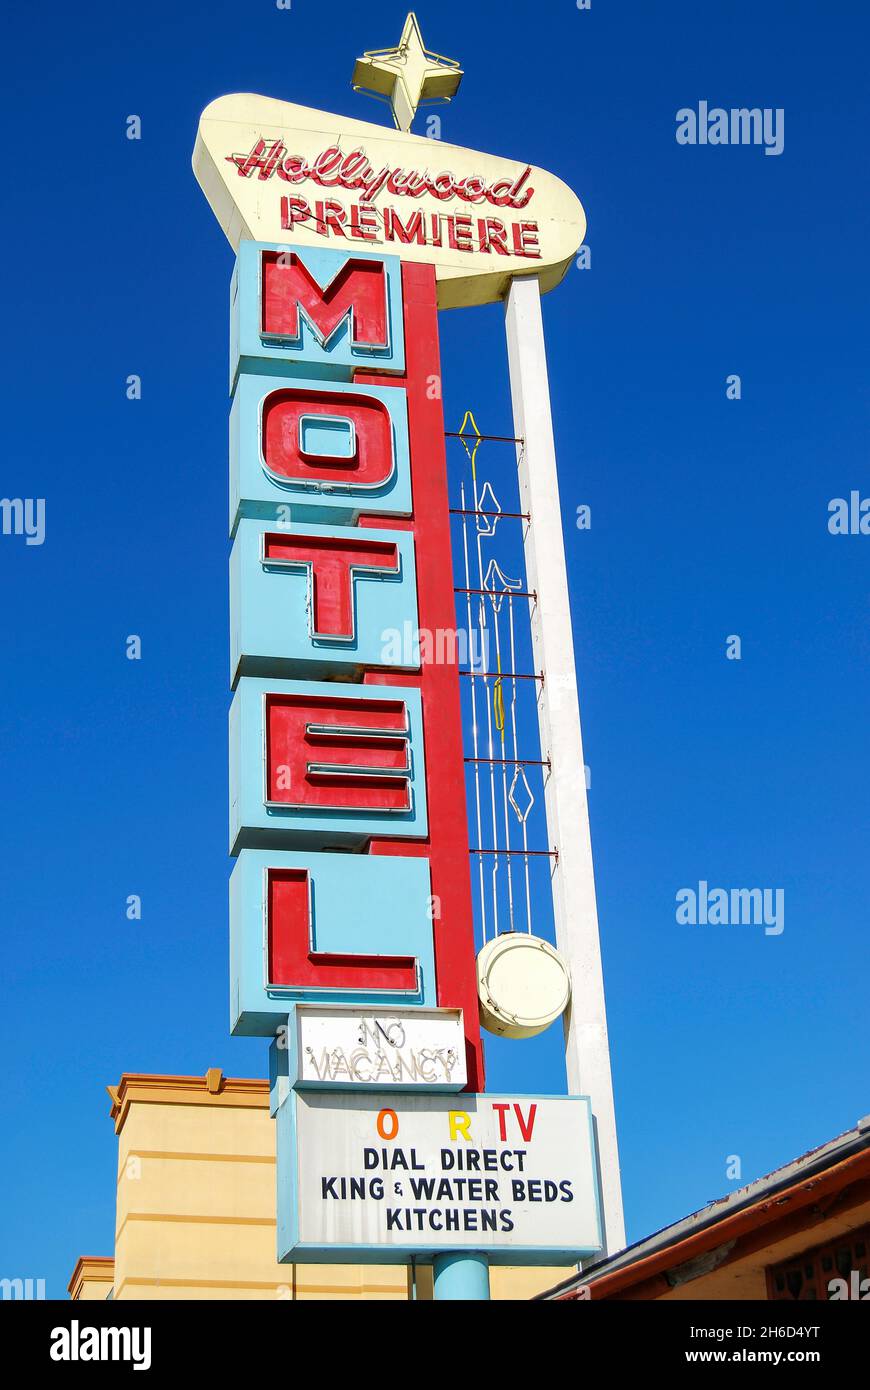 Hollywood Premiere 1950 Motel Schild, Hollywood Boulevard, Hollywood, Los Angeles, Kalifornien, Vereinigte Staaten von Amerika Stockfoto